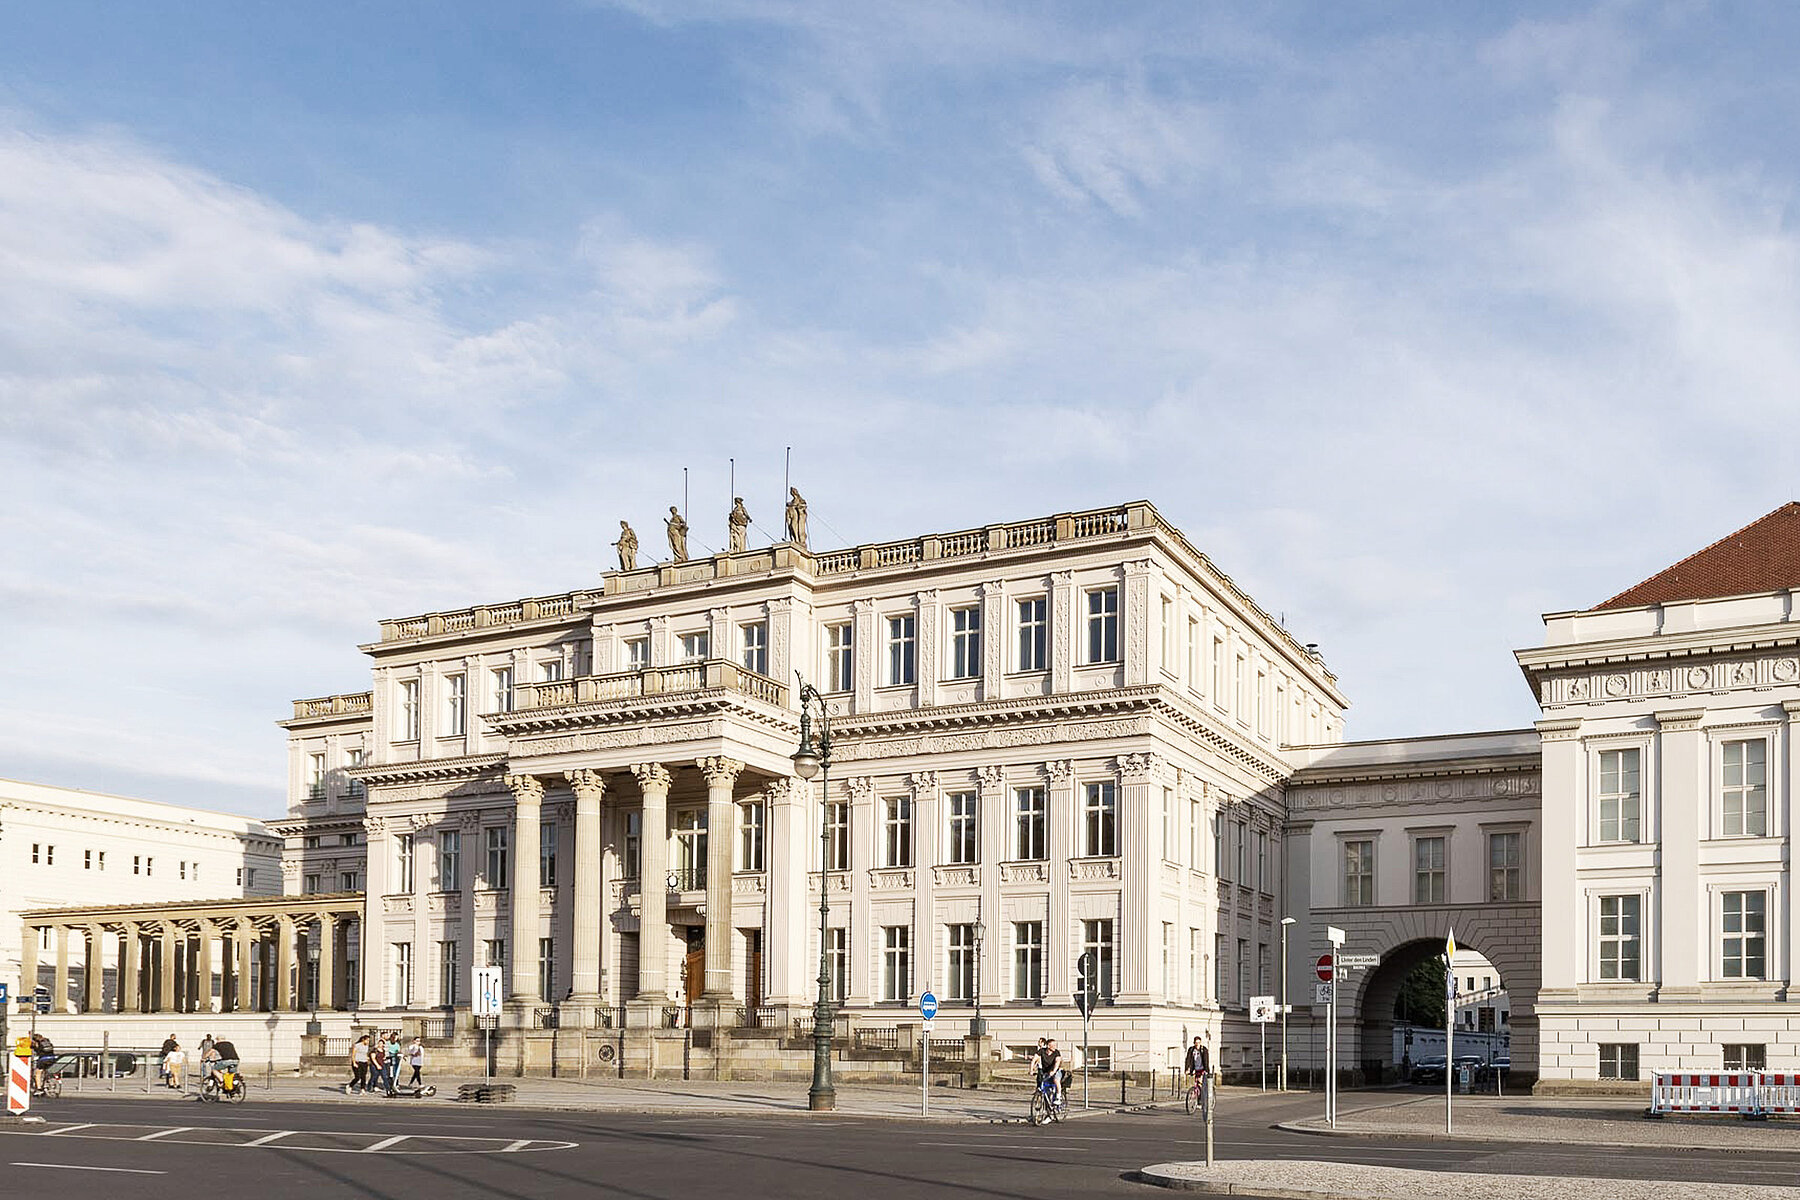 Blick auf das klassizistische Kronprinzenpalais. Davor liegt der leere Boulevard Unter den Linden.